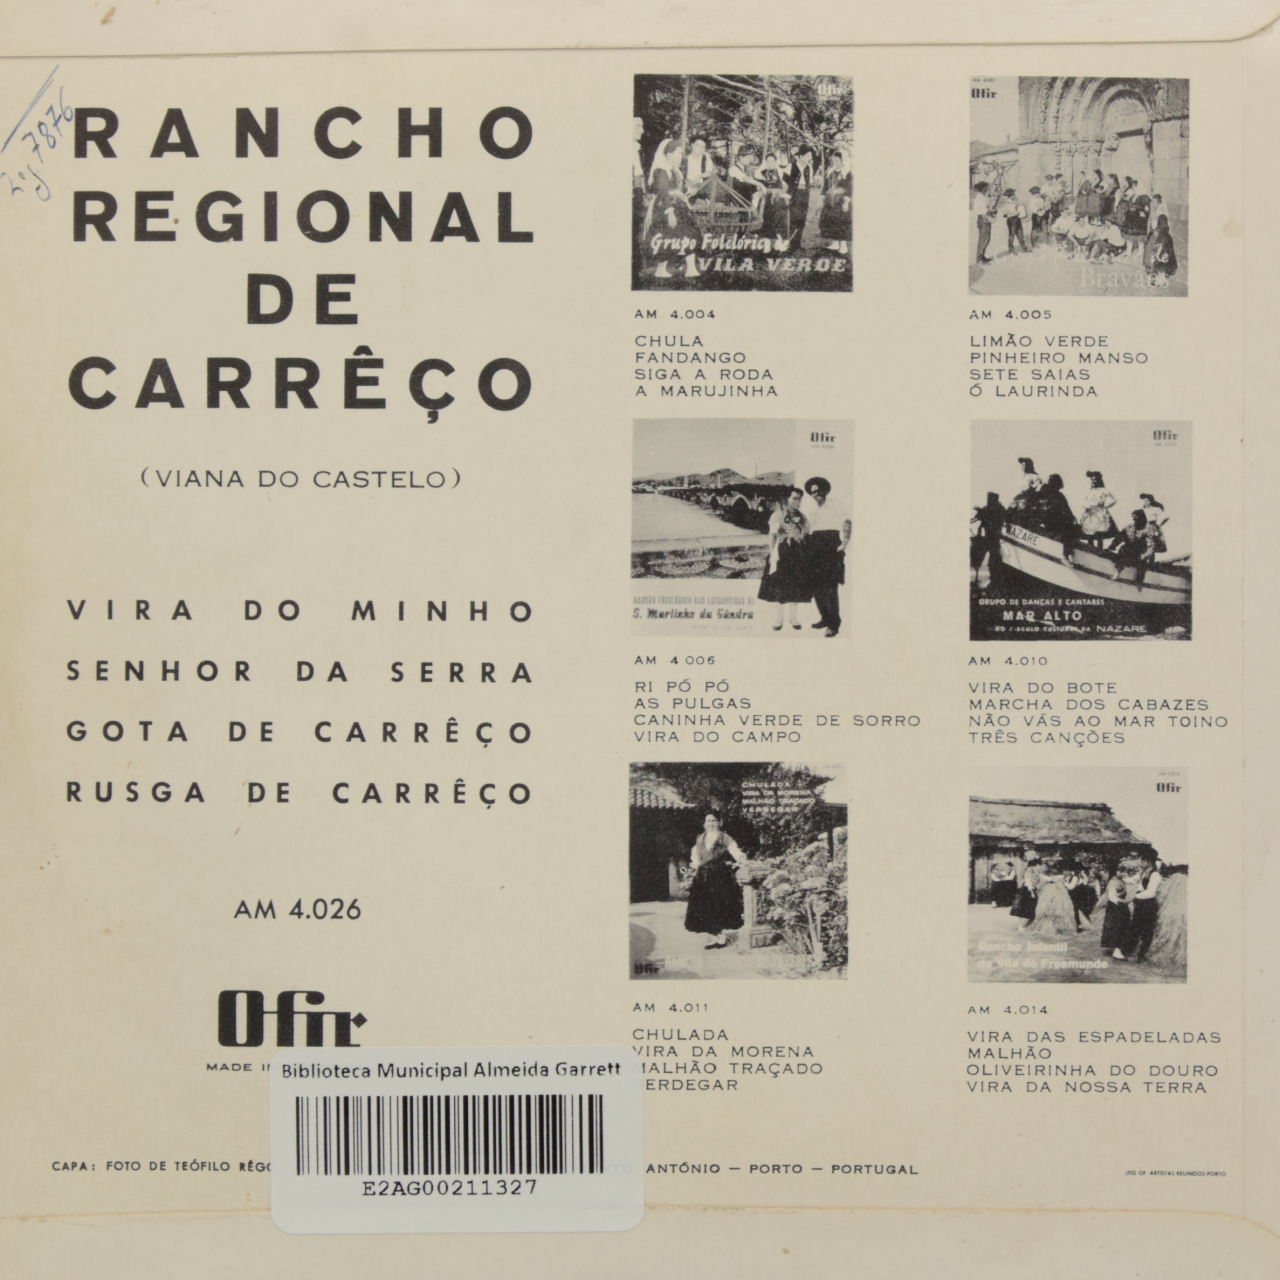 Rancho Regional de Carreço